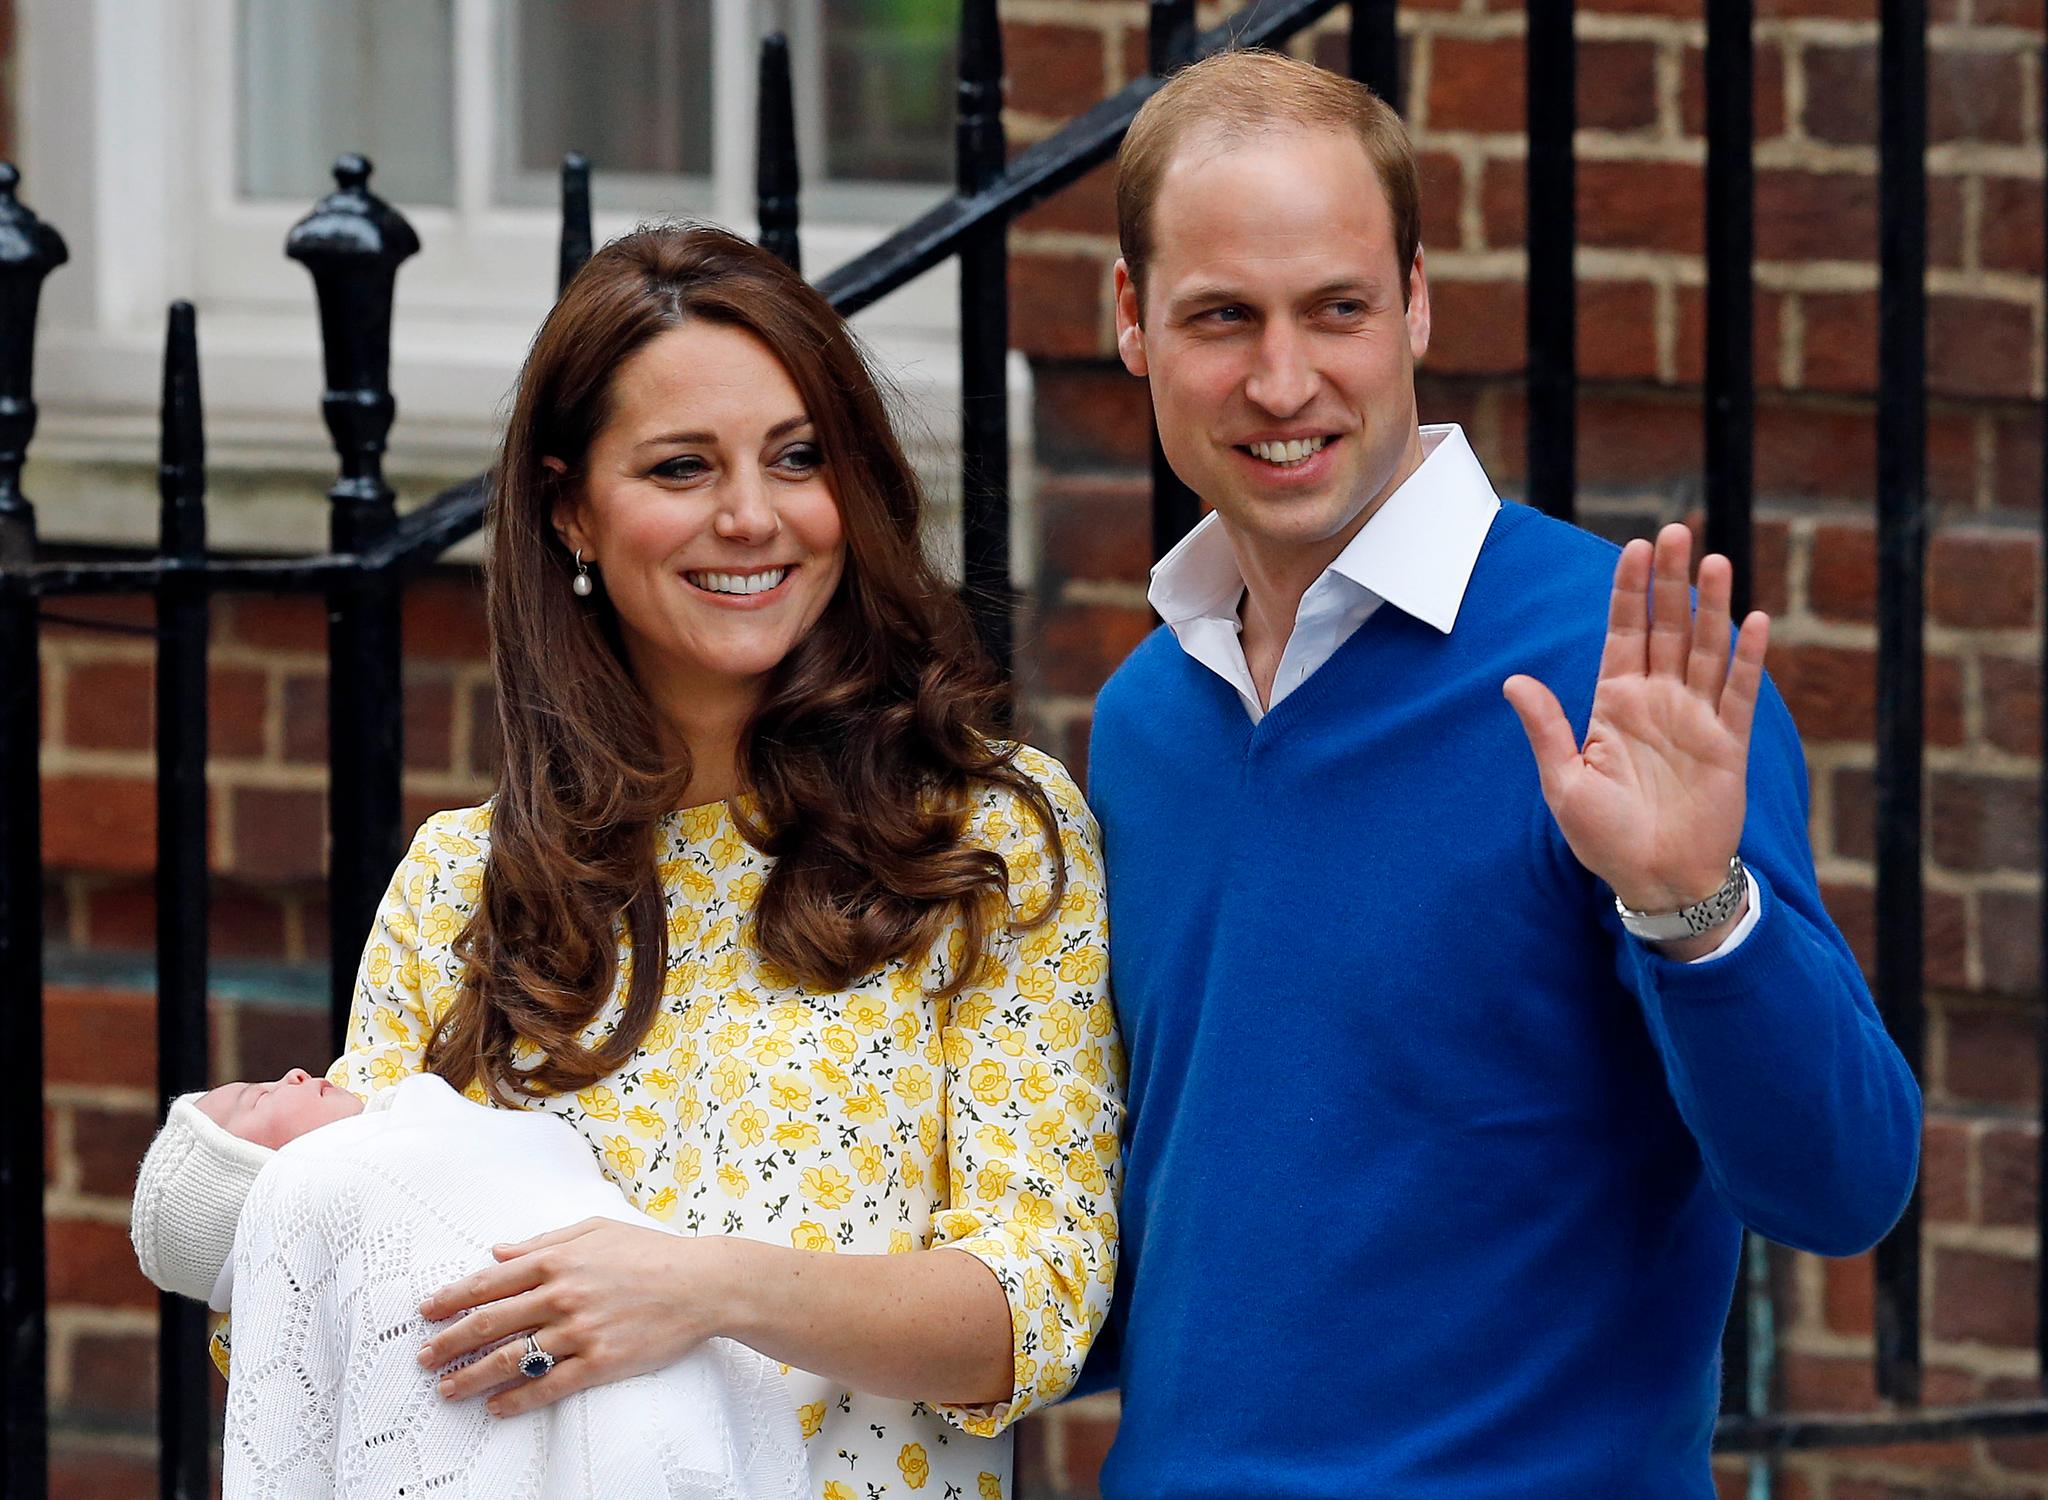 LILLESØSTER: Prins William og hertuginne Kate fikk lørdag formiddag en datter. Den nyfødte prinsessen er dronning Elizabeths femte oldebarn og blir nummer fire i arvefølgen. Spekulasjonene går høyt i Storbritannia om hvilke navn den lille jenta får.